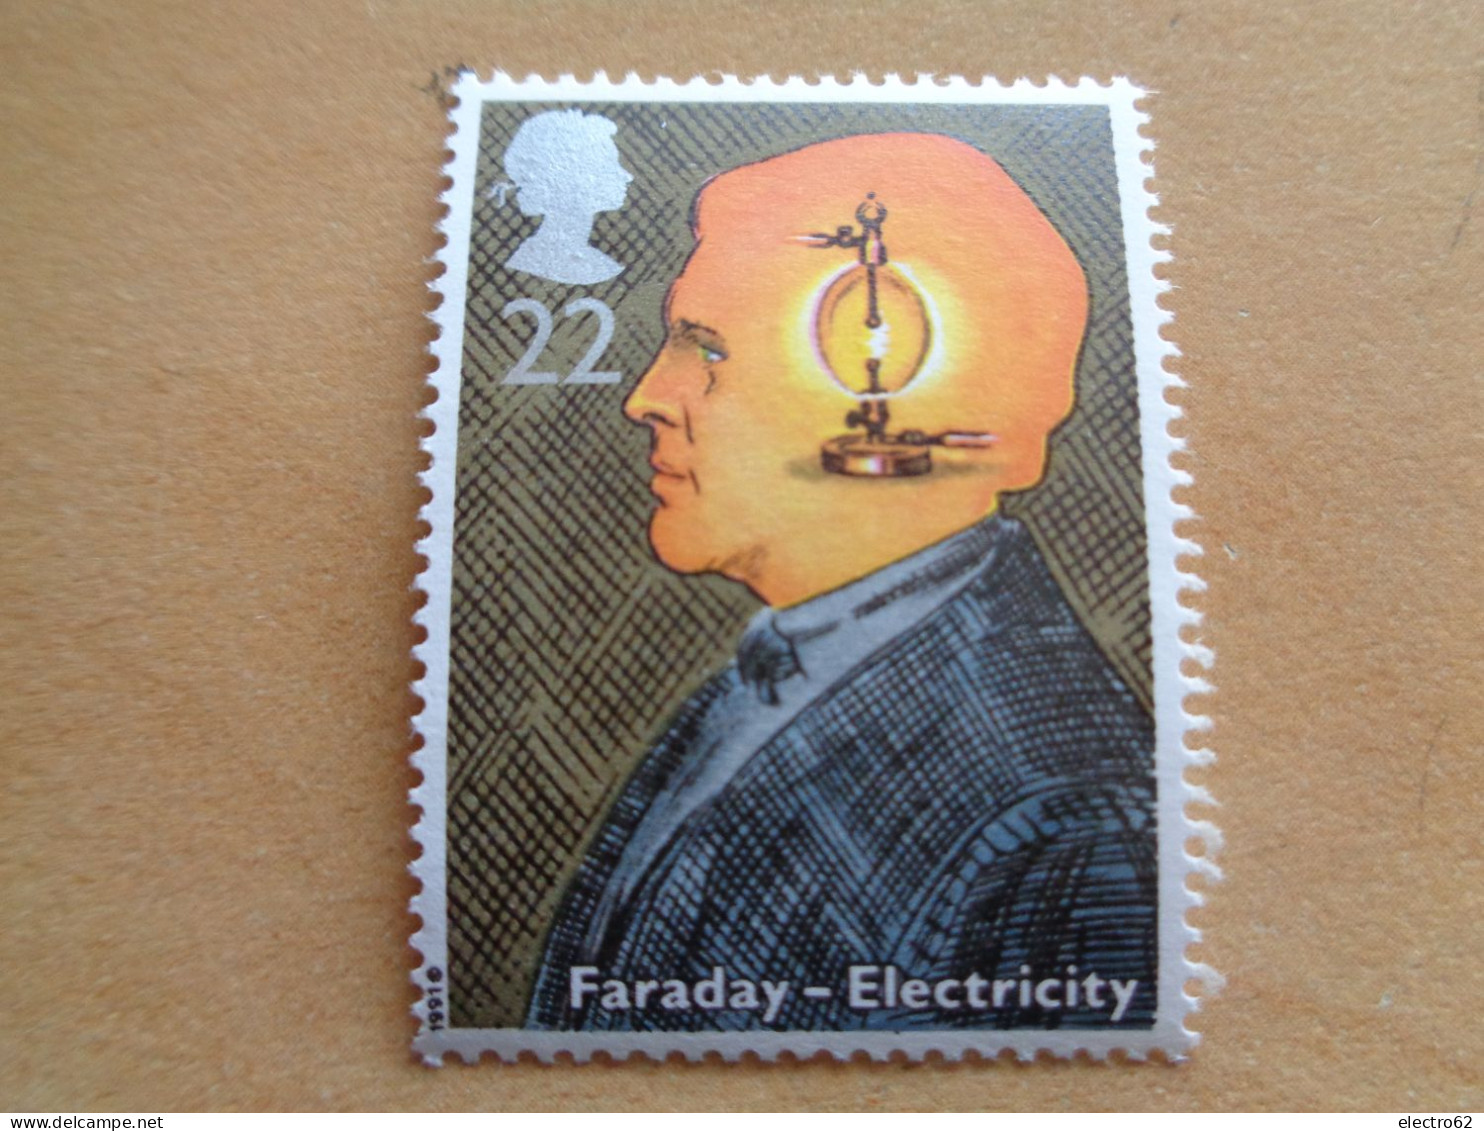 Grande Bretagne Great Britain Faraday électricité Electromagnétisme Electricity Großbitannien Brittannië 1991 Neuf - Elektriciteit